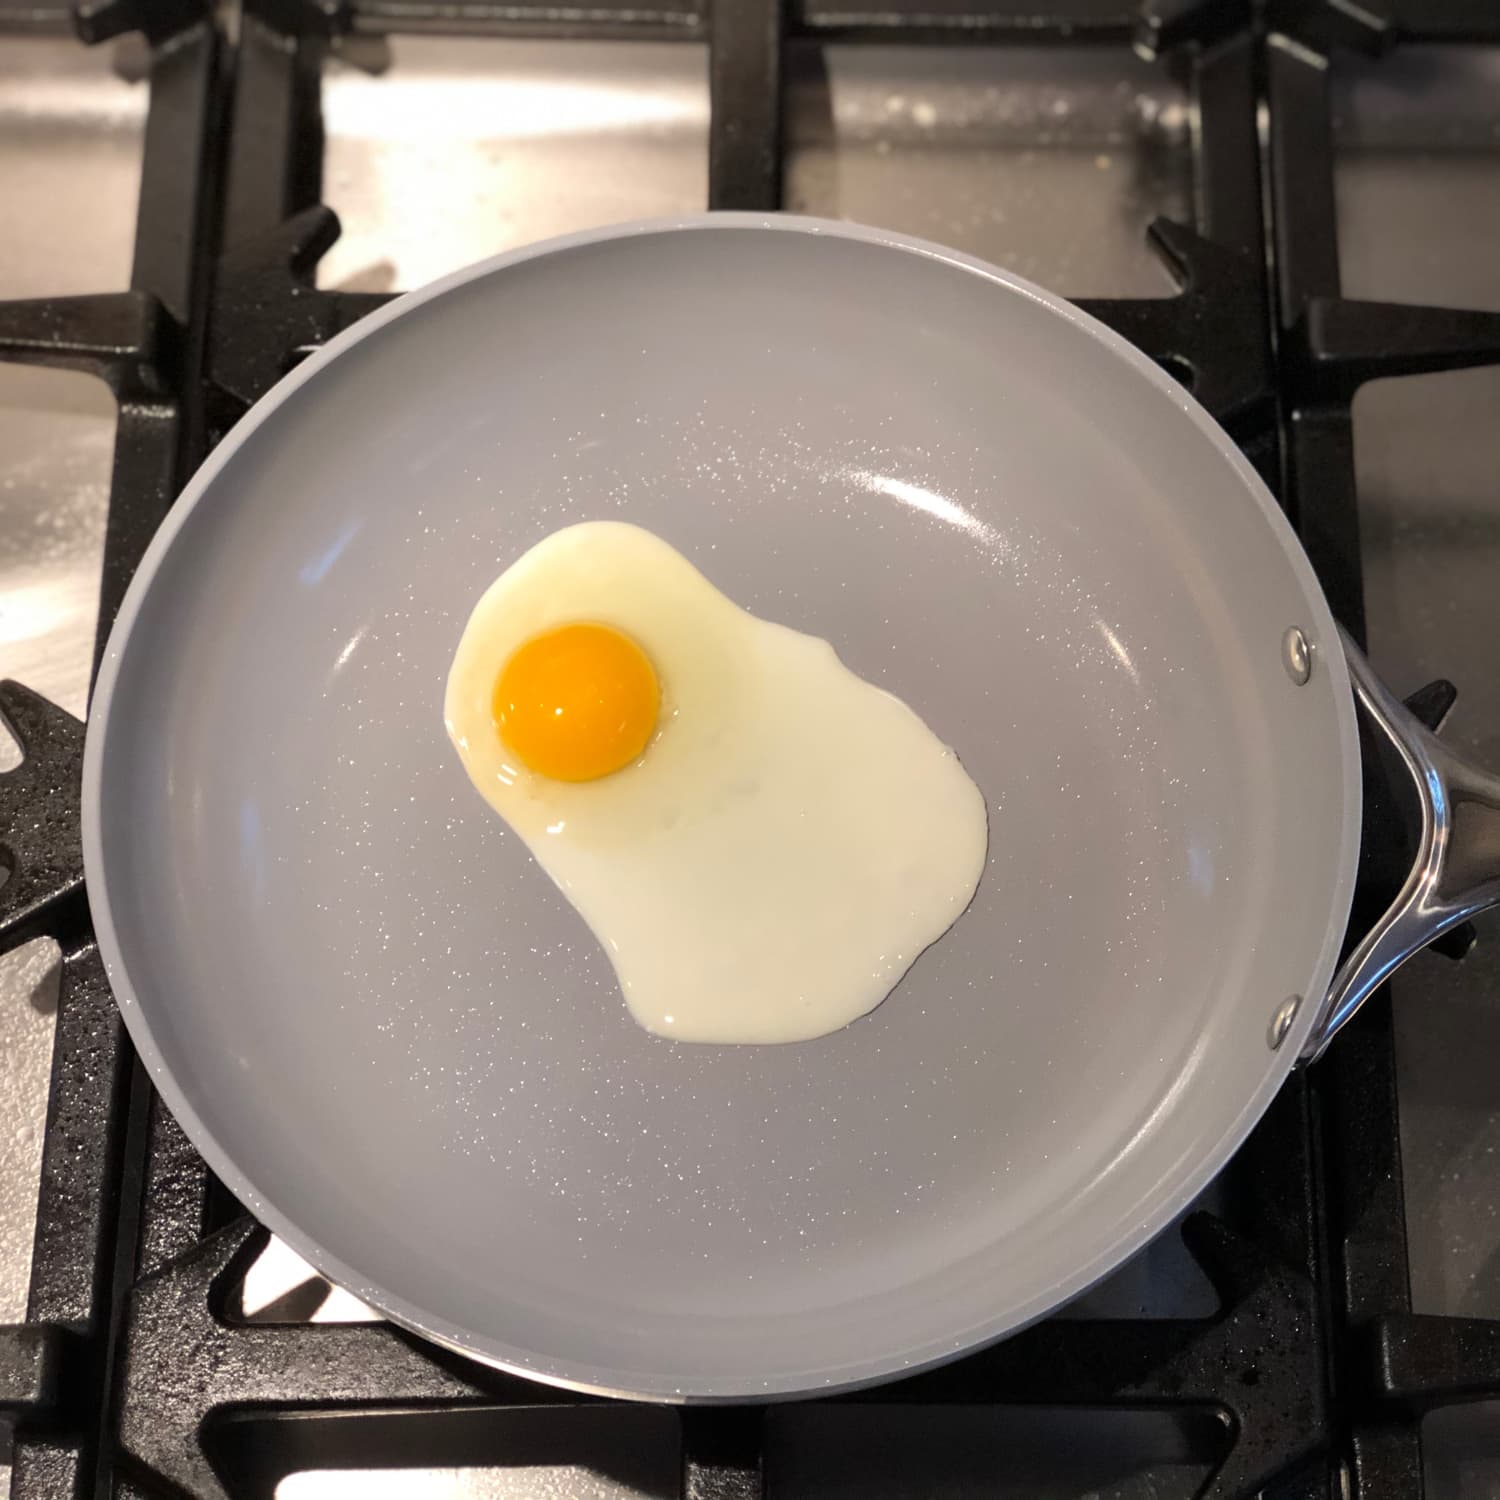  Egg Brush Cleaner, Silicone Egg Brush for Fresh Egg, Farm-Fresh  Eggs Made Sparkling Clean, Multifunctional Vegetable/Egg Scrubber Kitchen  Tool (Beige-1pcs): Home & Kitchen